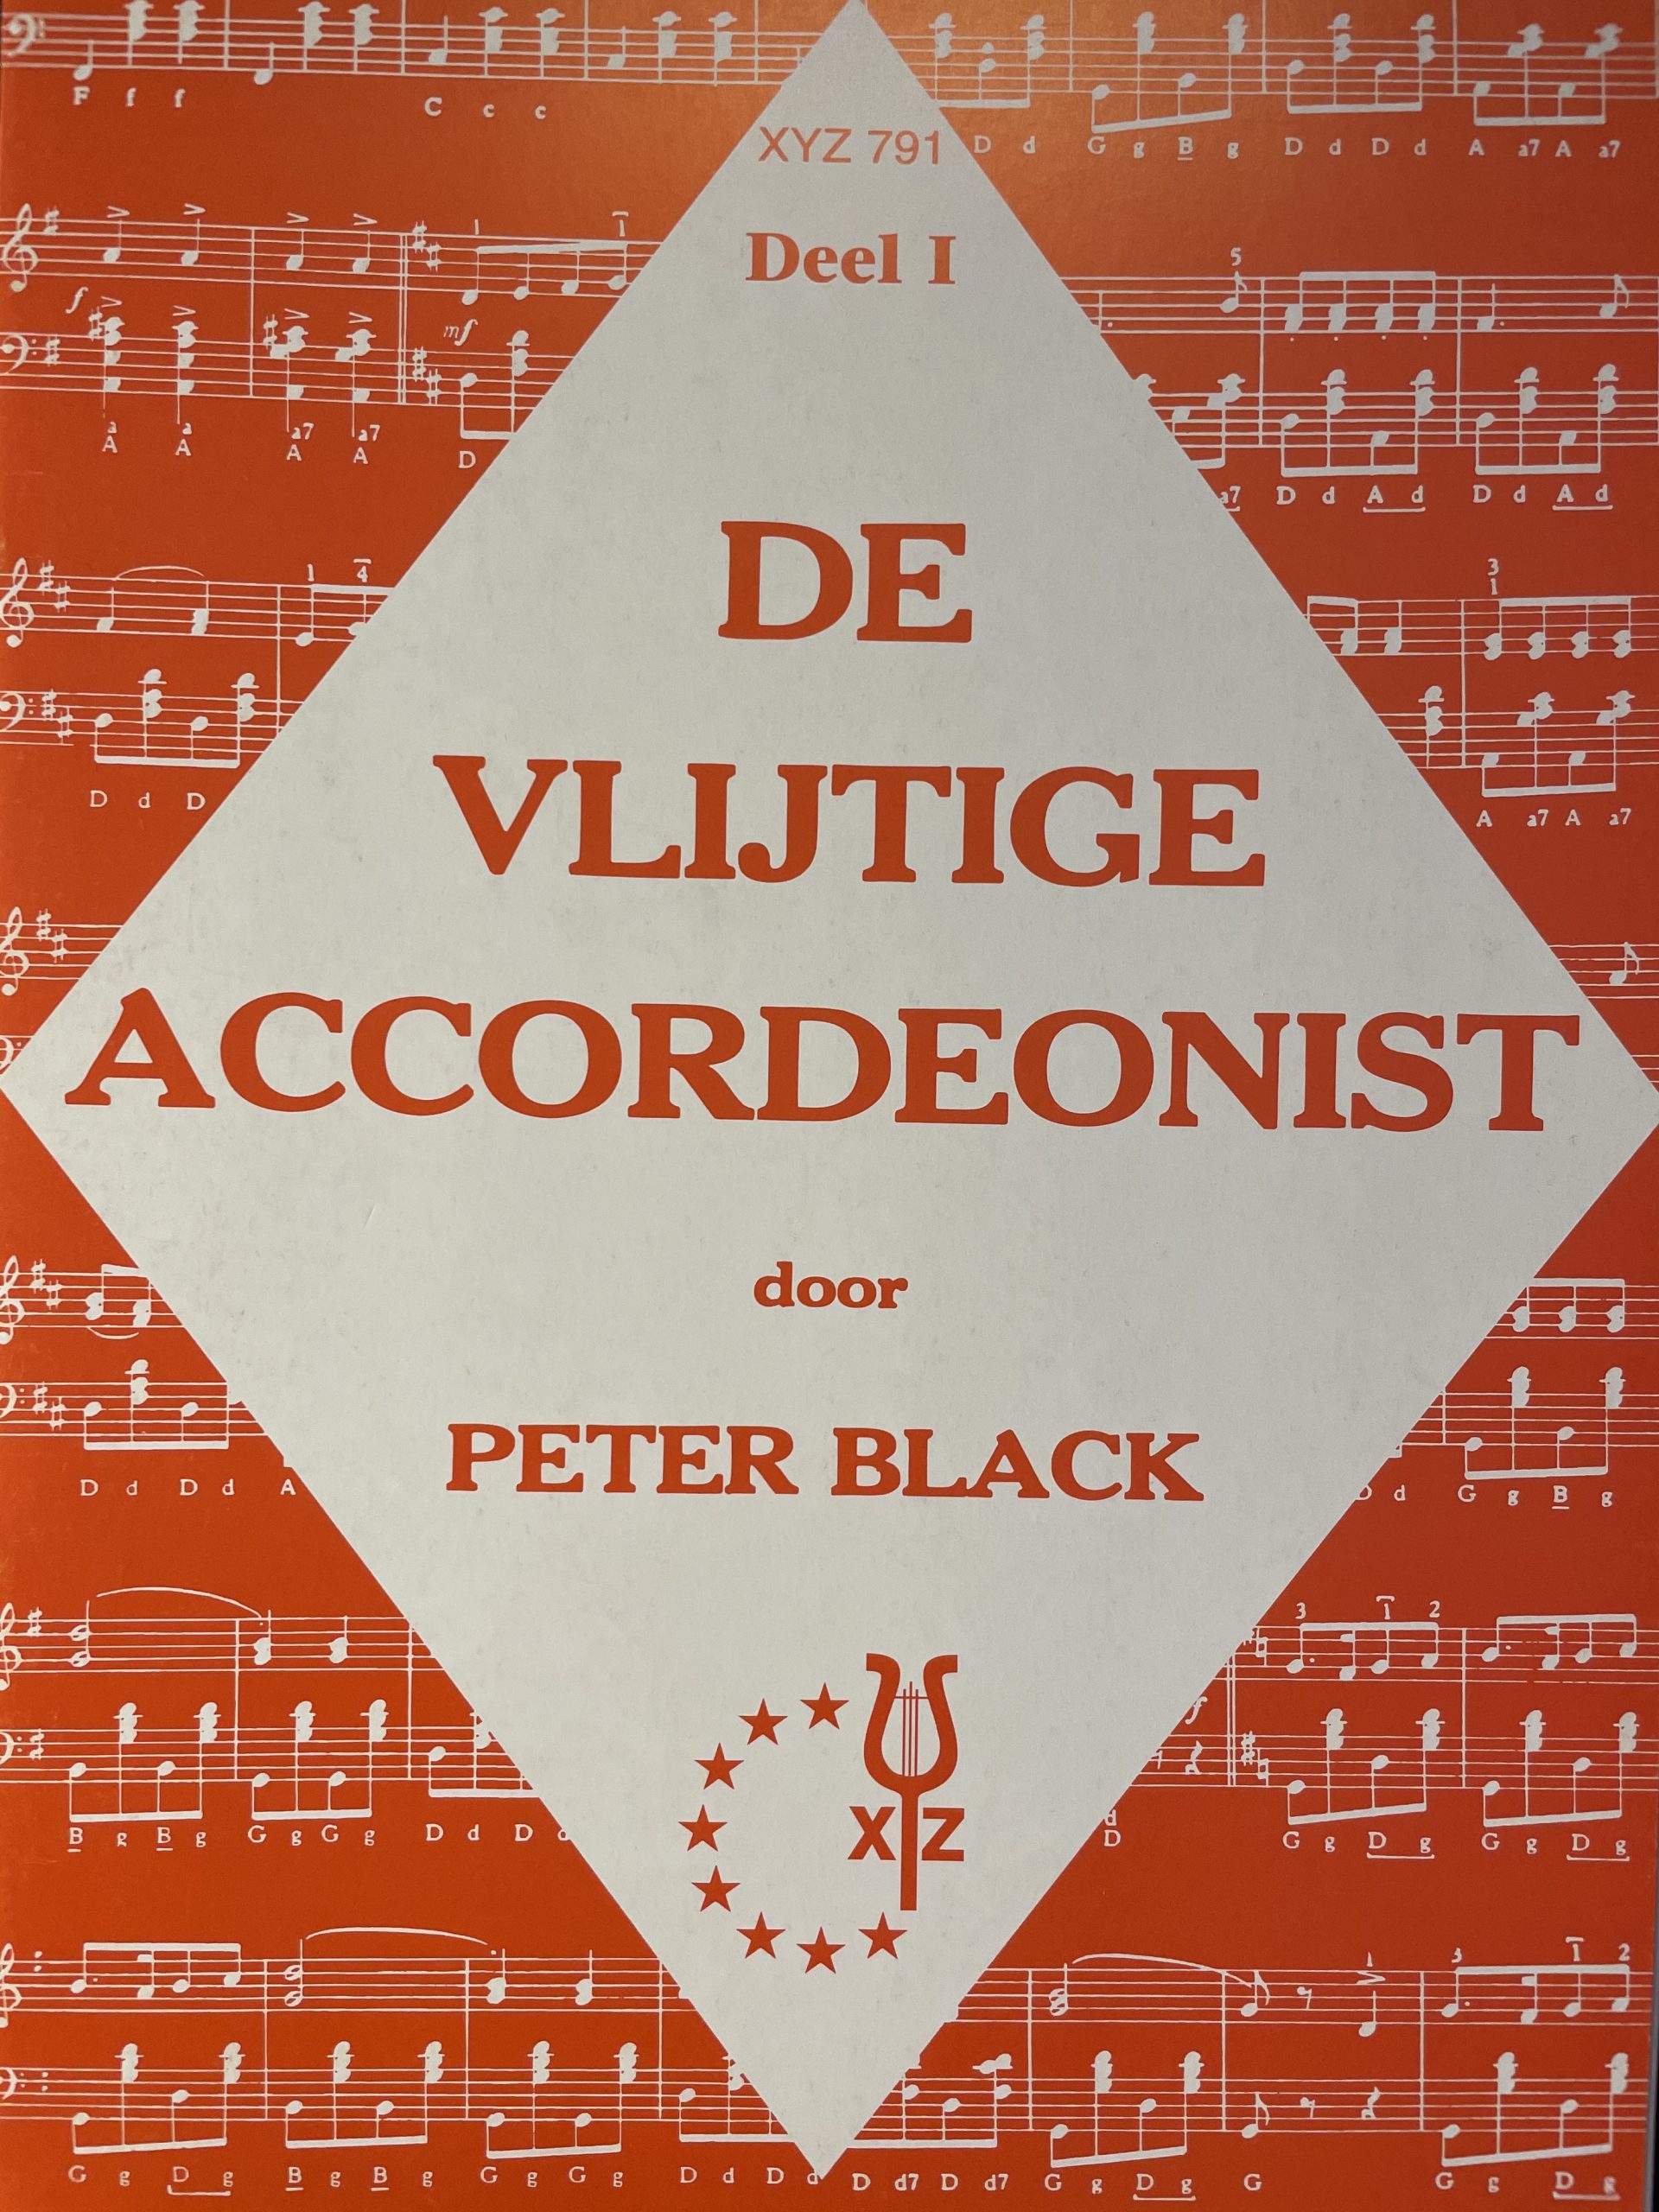 De vlijtige accordeonist - Peter Black - Deel 1